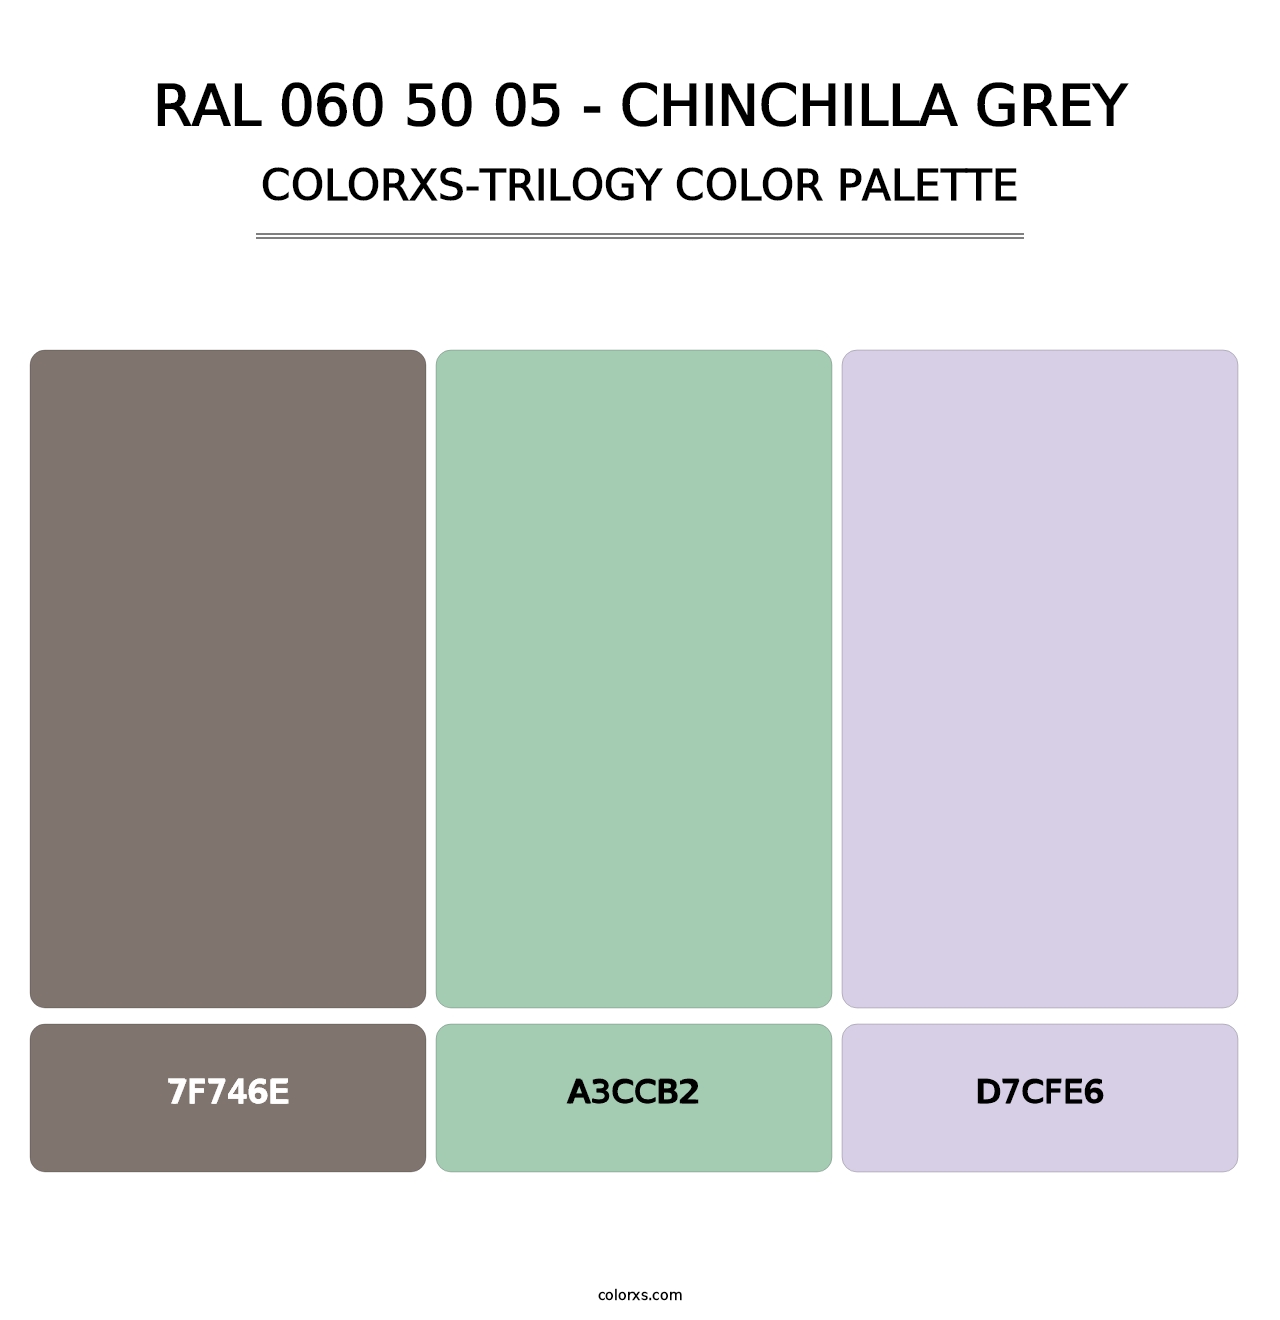 RAL 060 50 05 - Chinchilla Grey - Colorxs Trilogy Palette